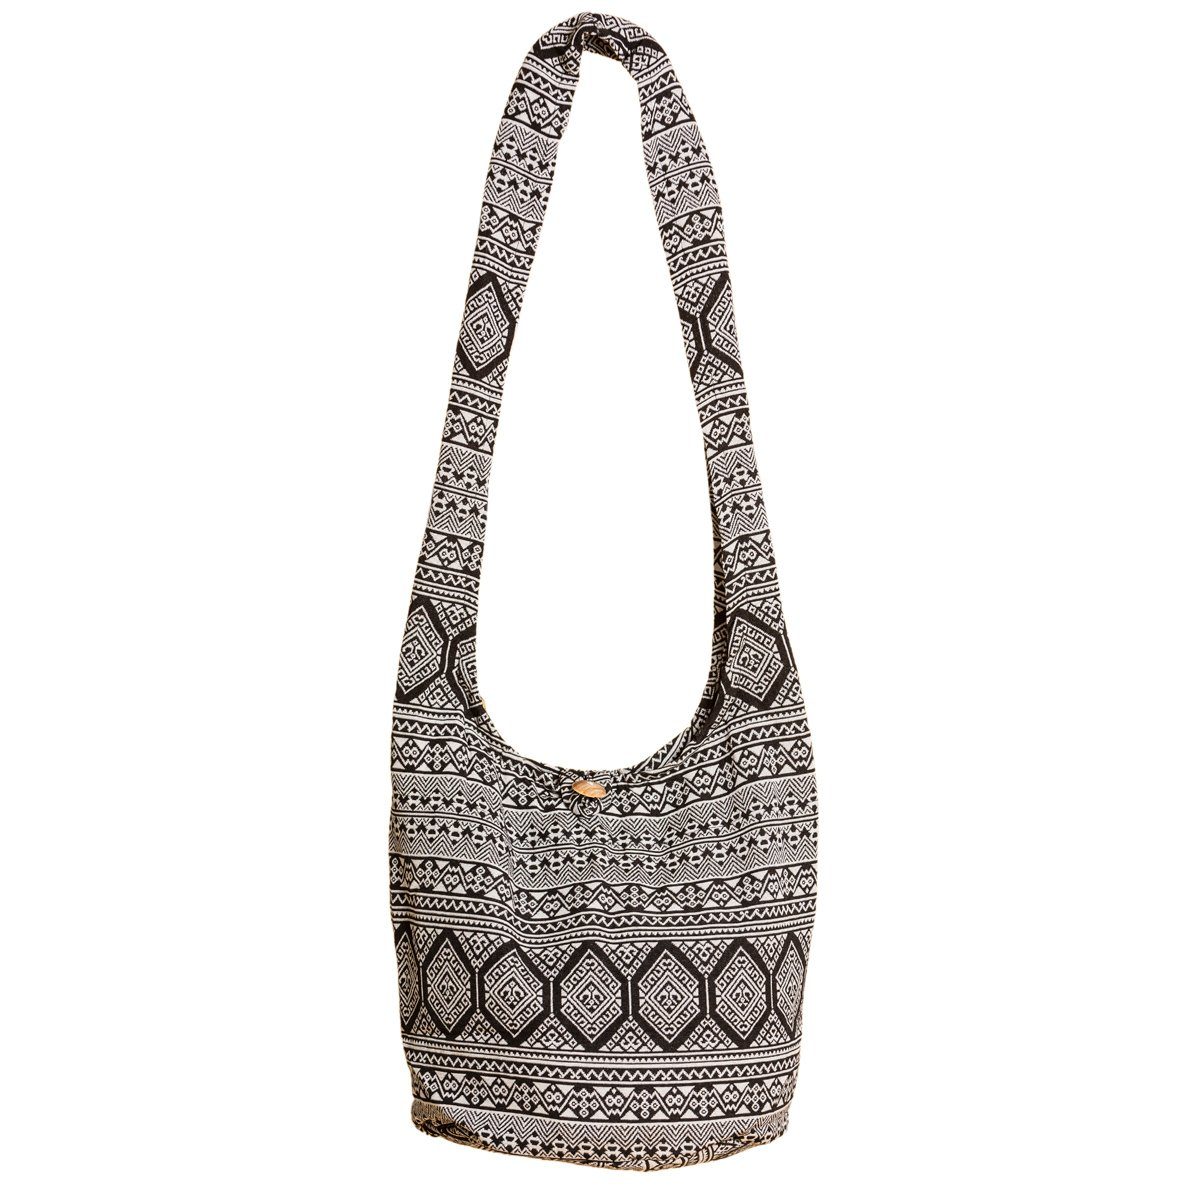 PANASIAM Strandtasche Schulterbeutel in gewebten Designs aus 100 % Baumwolle Umhängetasche, In 2 Größen Beuteltasche auch als Wickeltasche und Handtasche geeignet schwarz weiß